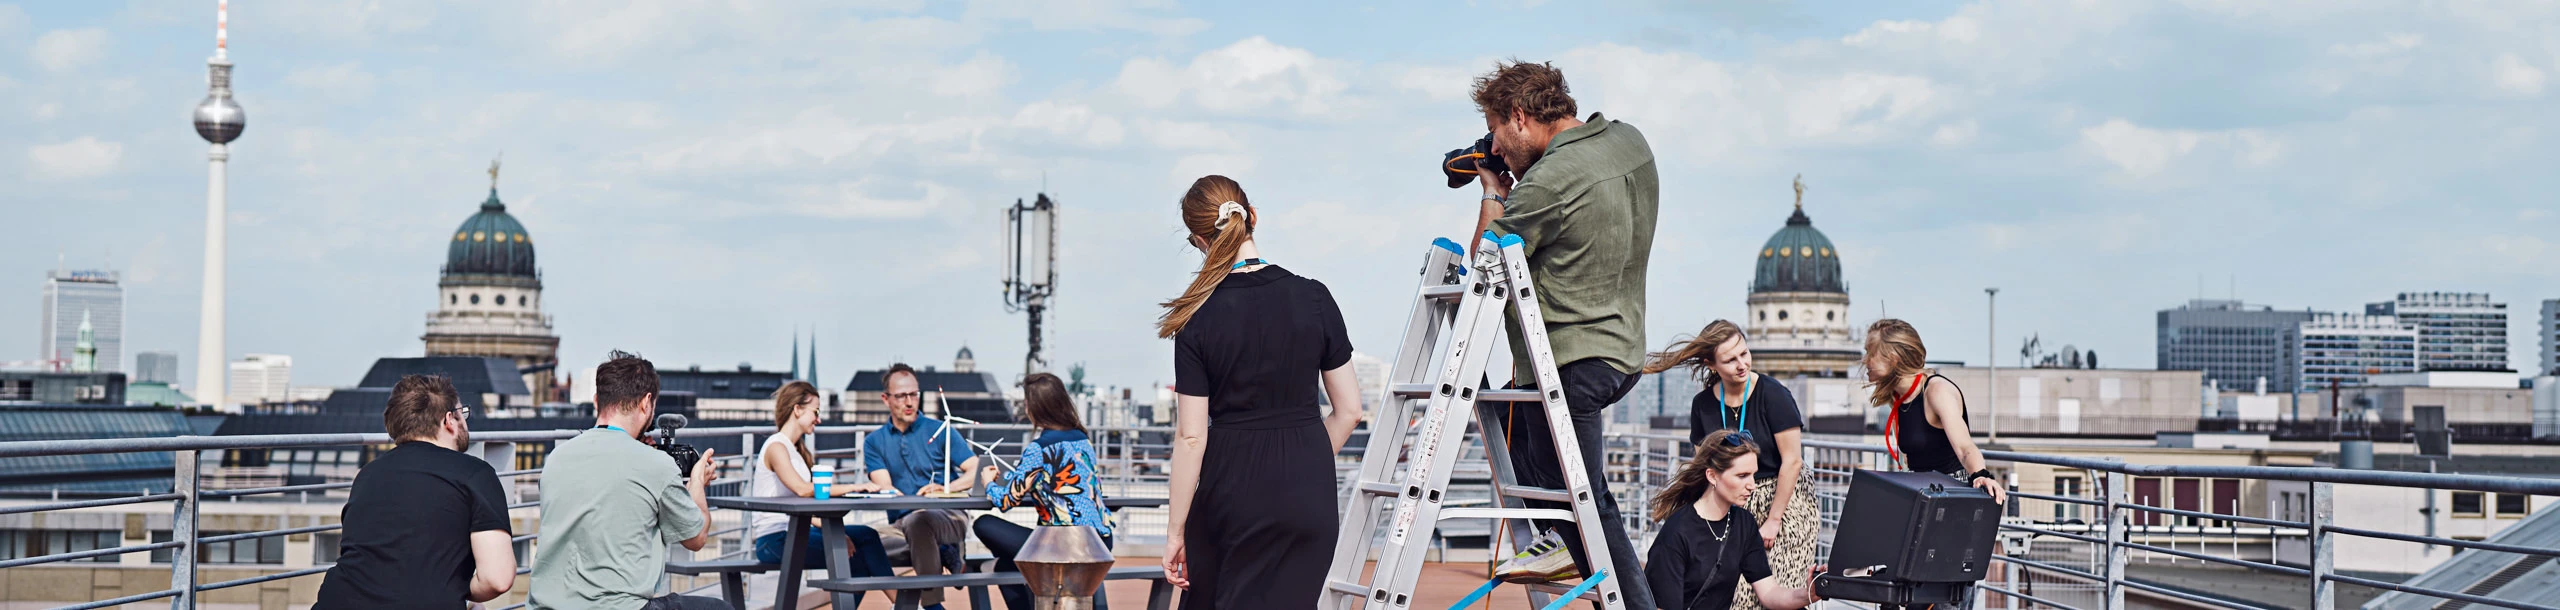 Fotoshooting auf einer Dachterasse in Berlin-Mitte